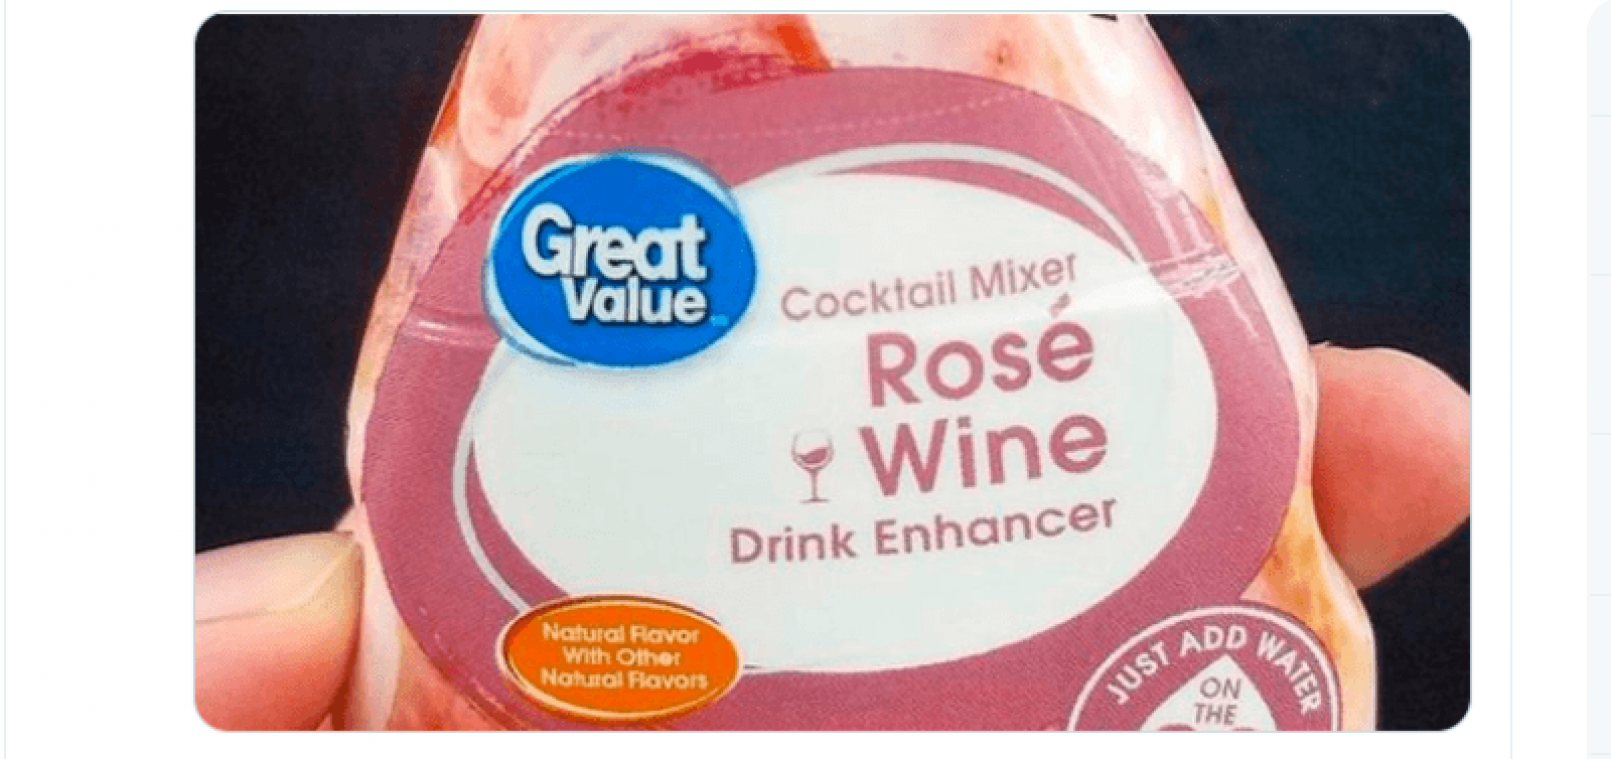 Met dit product zet je water om in rosé